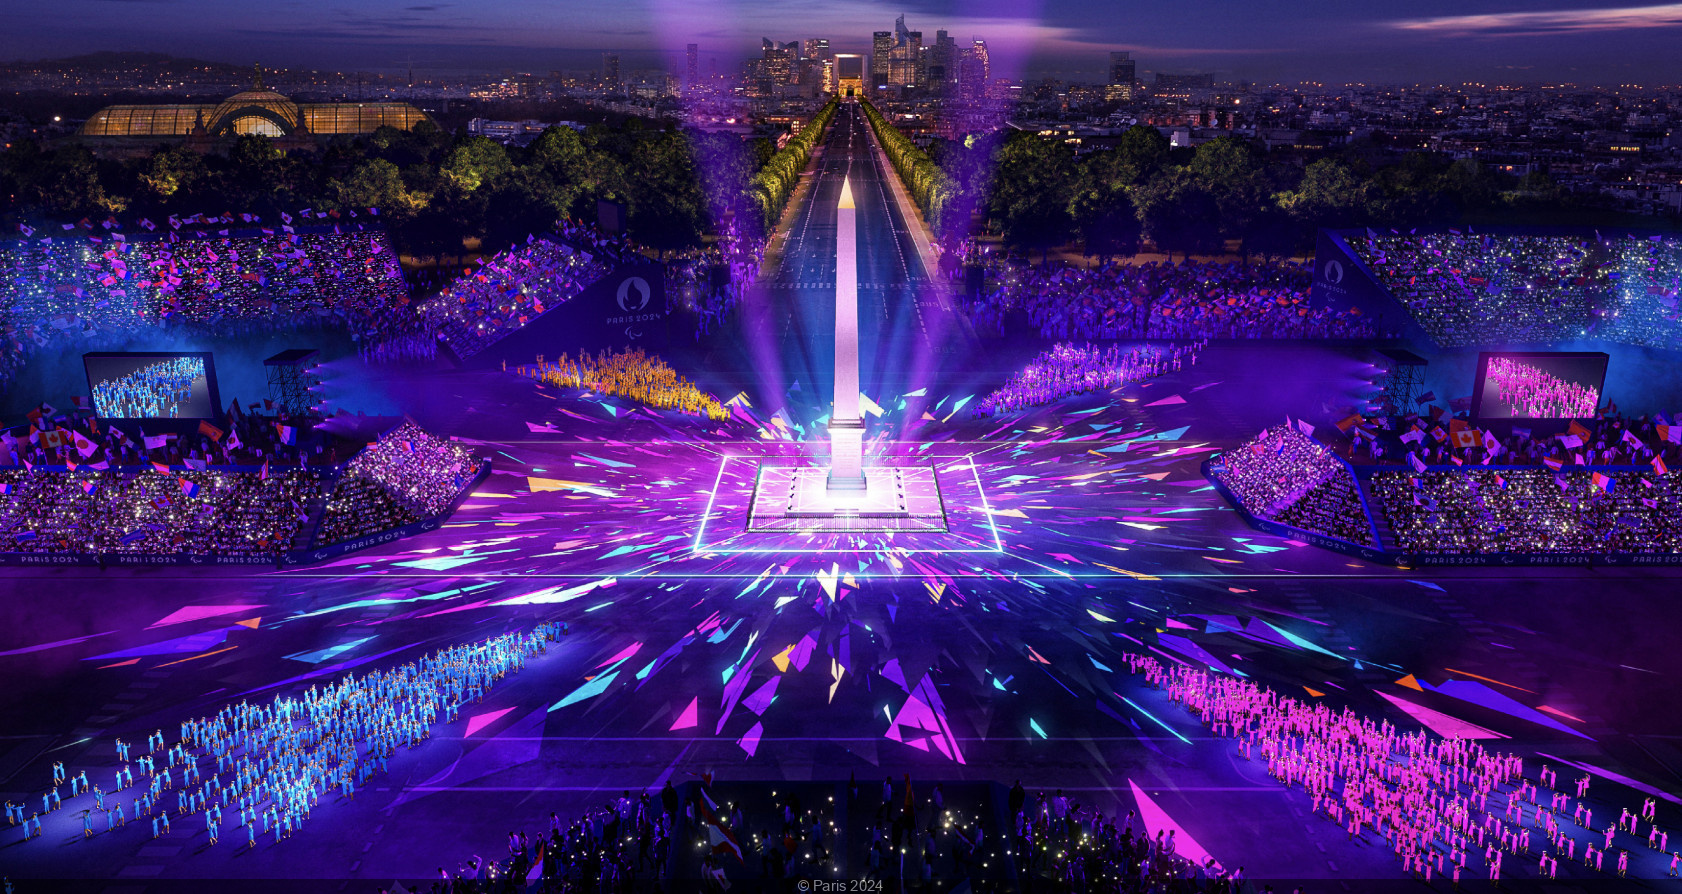 Paris 2024 : la boutique officielle des Jeux olympiques ouvre aux